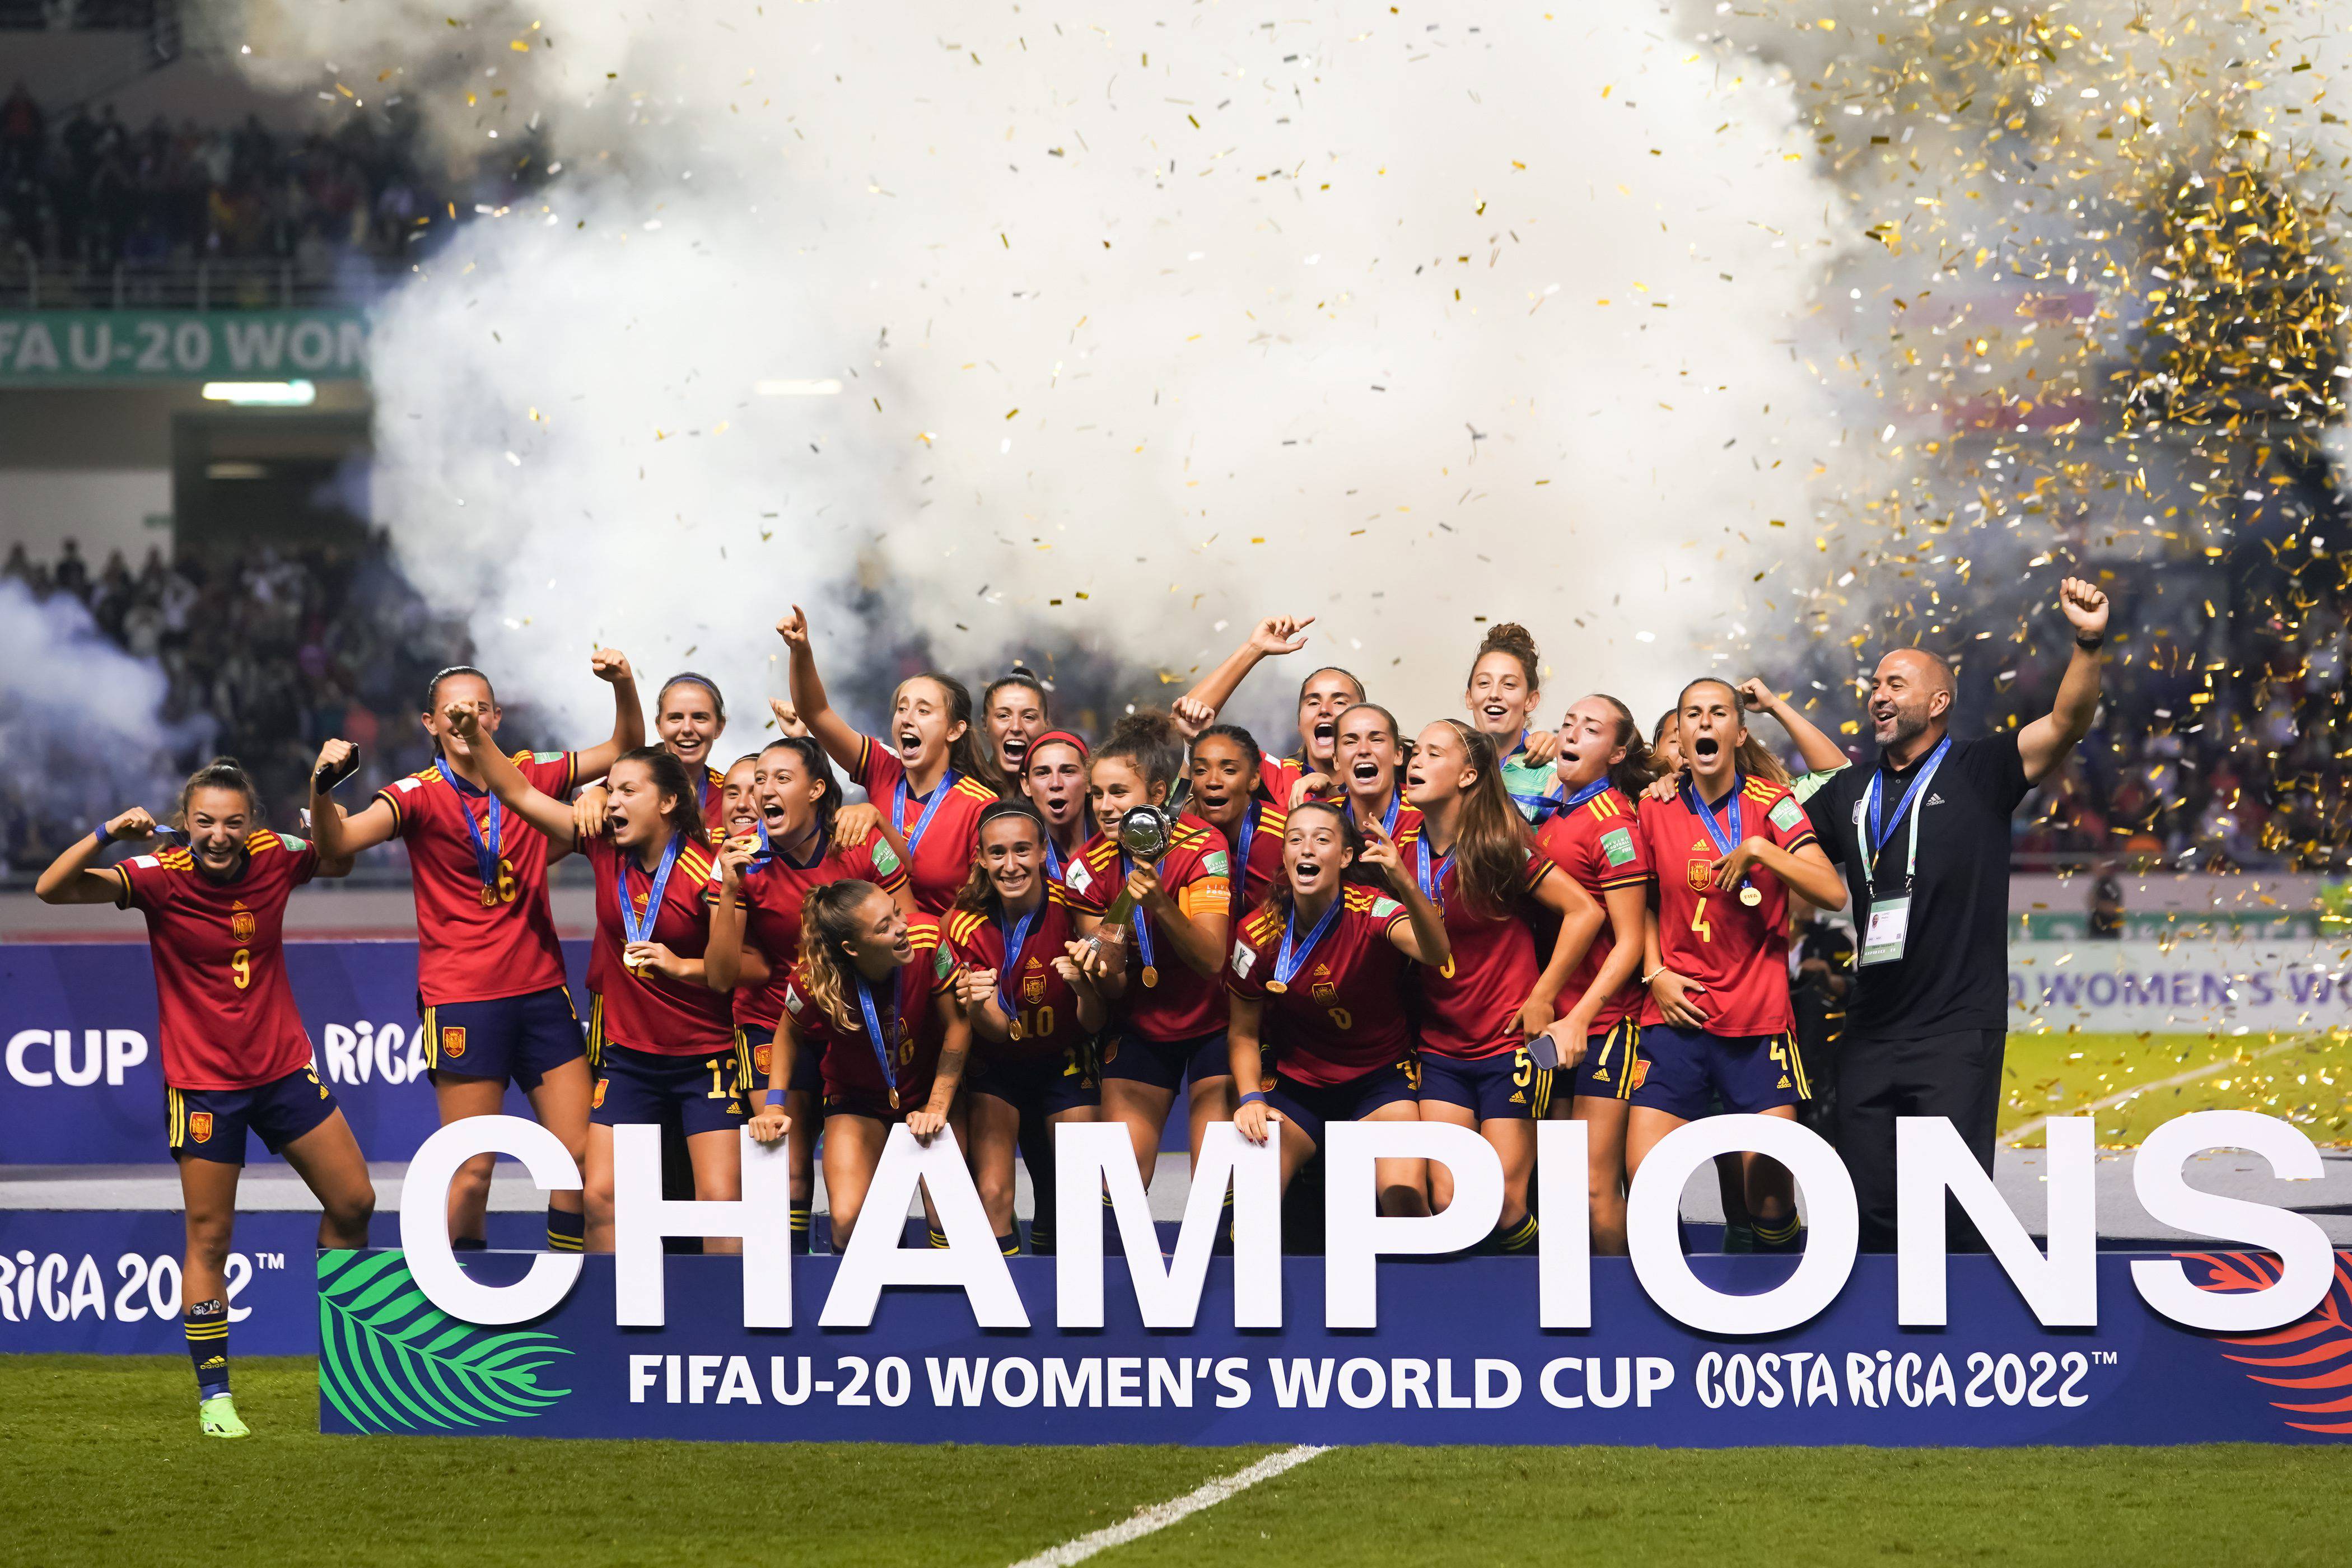 Cuántos mundiales tiene la selección española femenina